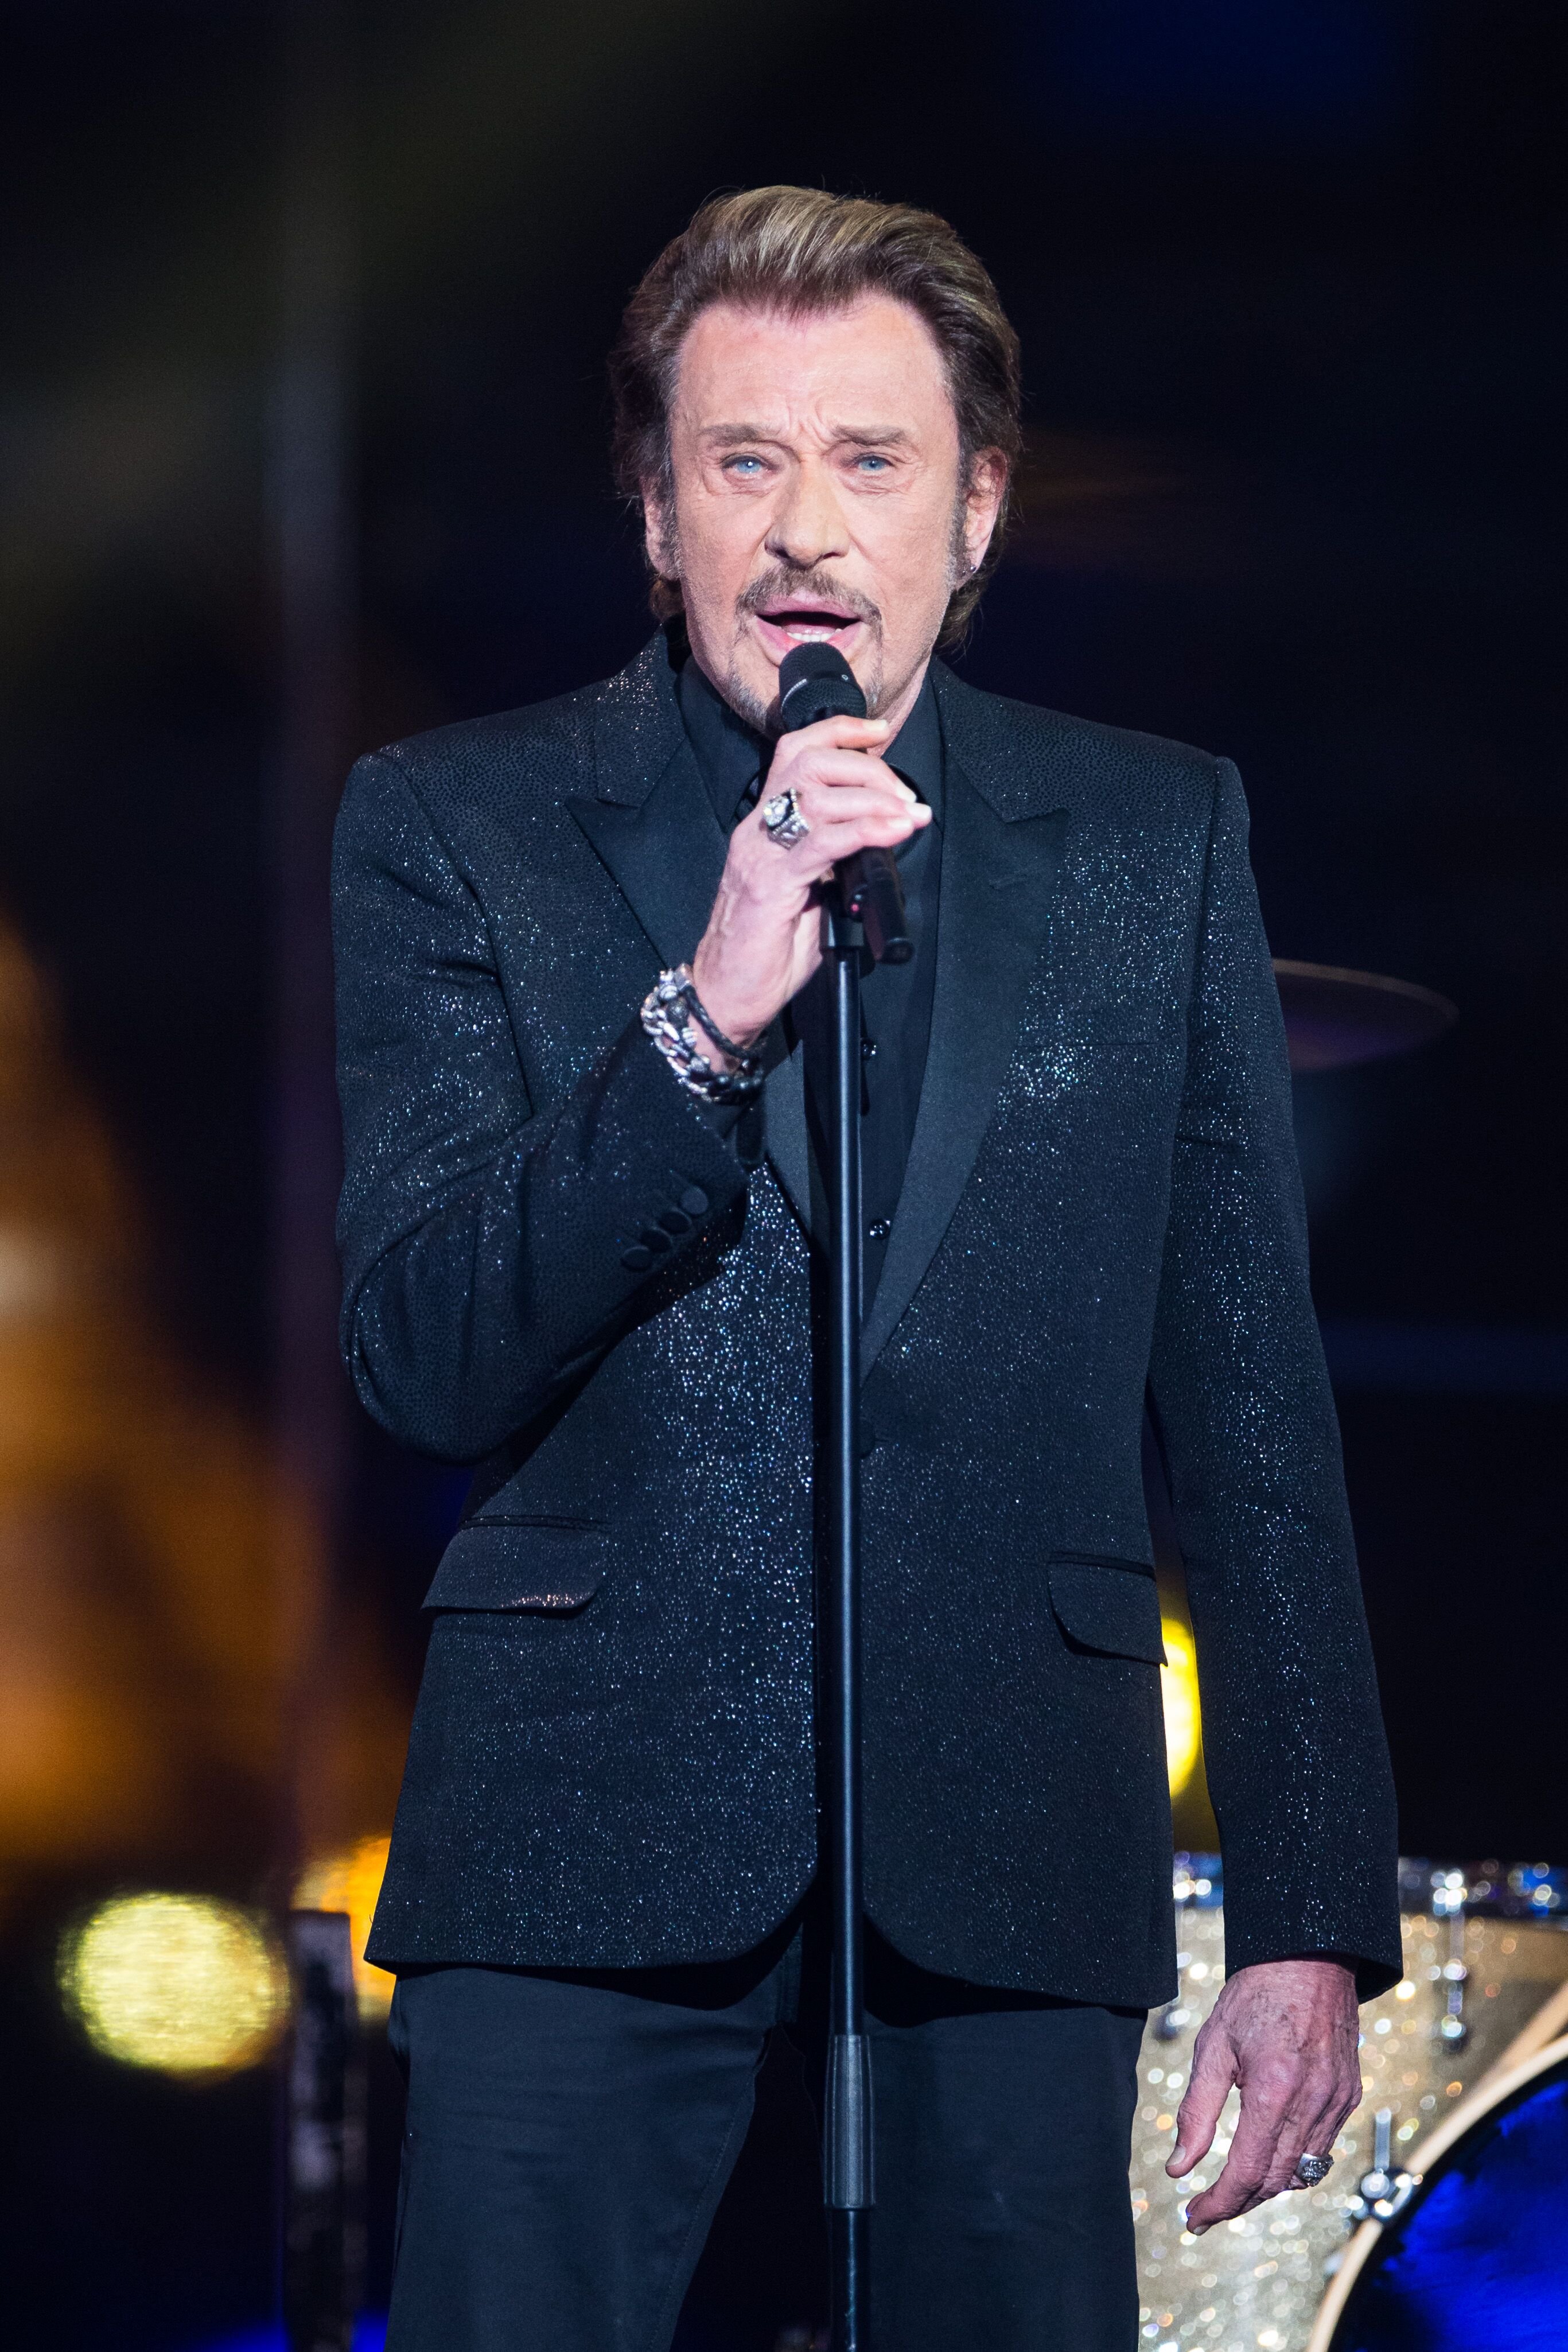 Le chanteur Johnny Hallyday sur scène lors de l'émission de télévision "France Télévisions Telethon 2014" le 6 décembre 2014 à Paris, France. | Photo : Getty Images